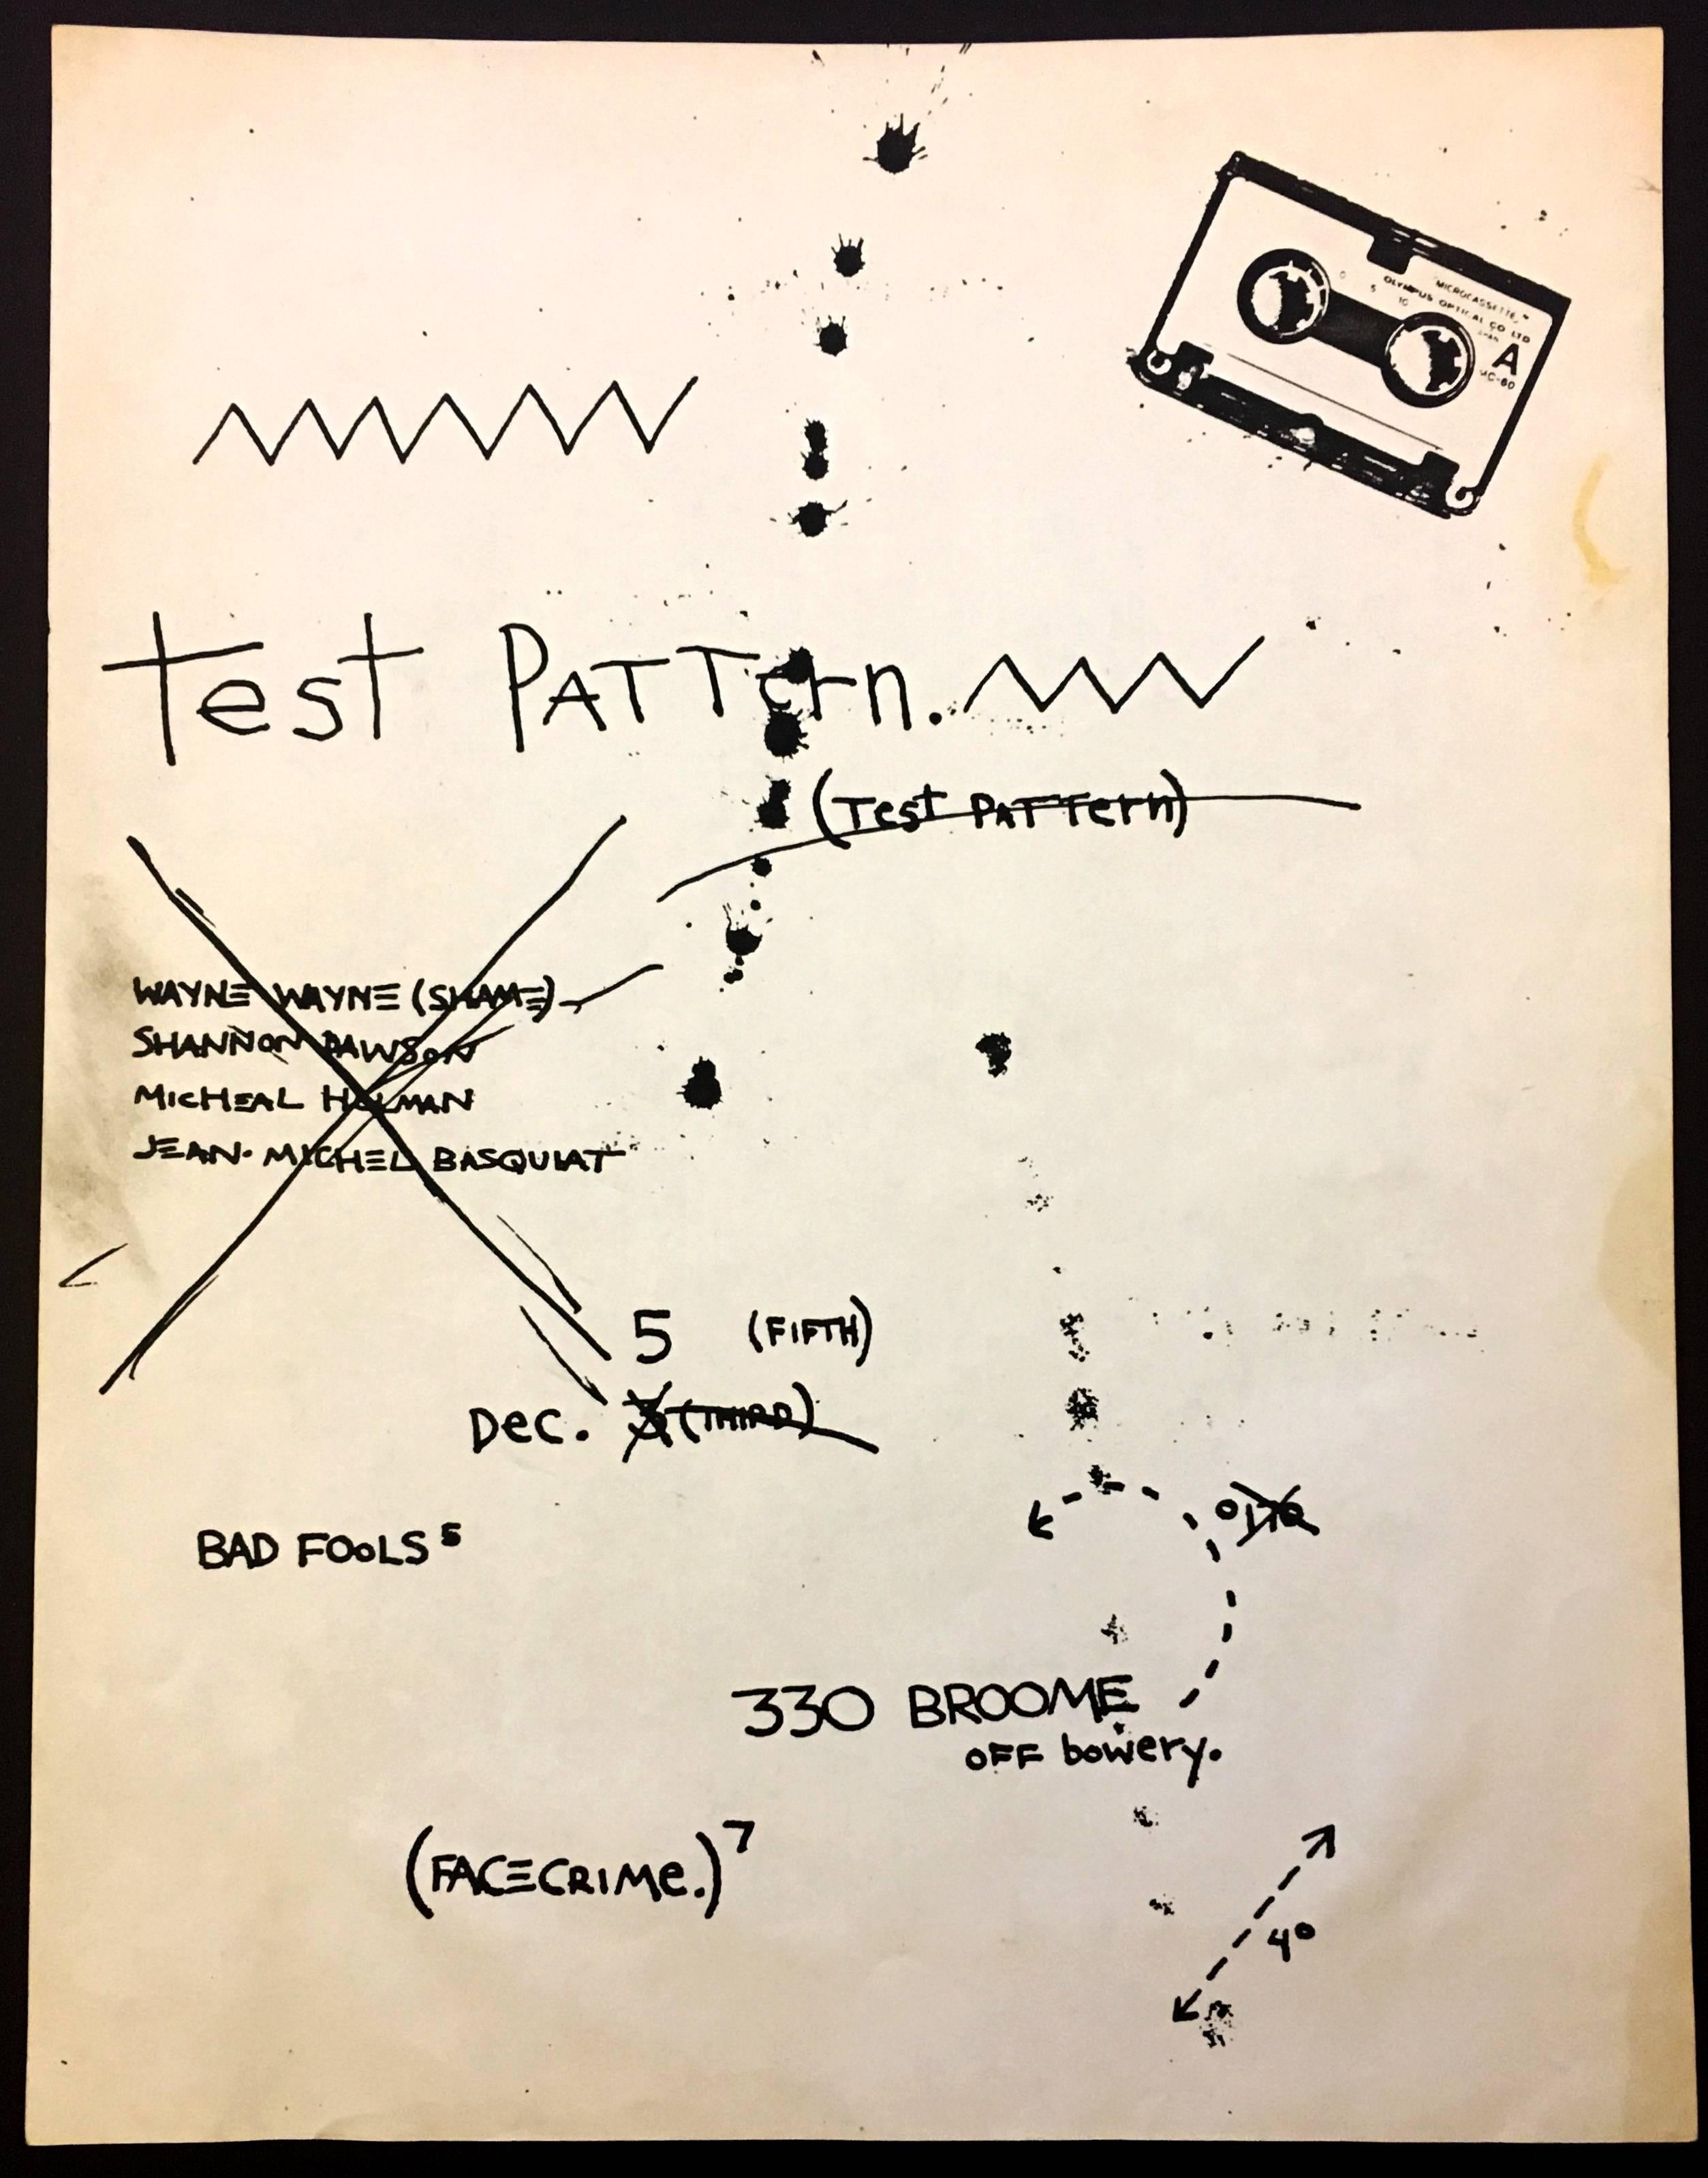 Jean-Michel Basquiat Testmuster 1979:
Basquiat entwarf dieses Flugblatt anlässlich eines Auftritts seiner Band Test Pattern (später in Gray umbenannt) im berühmten Downtown Art Space 